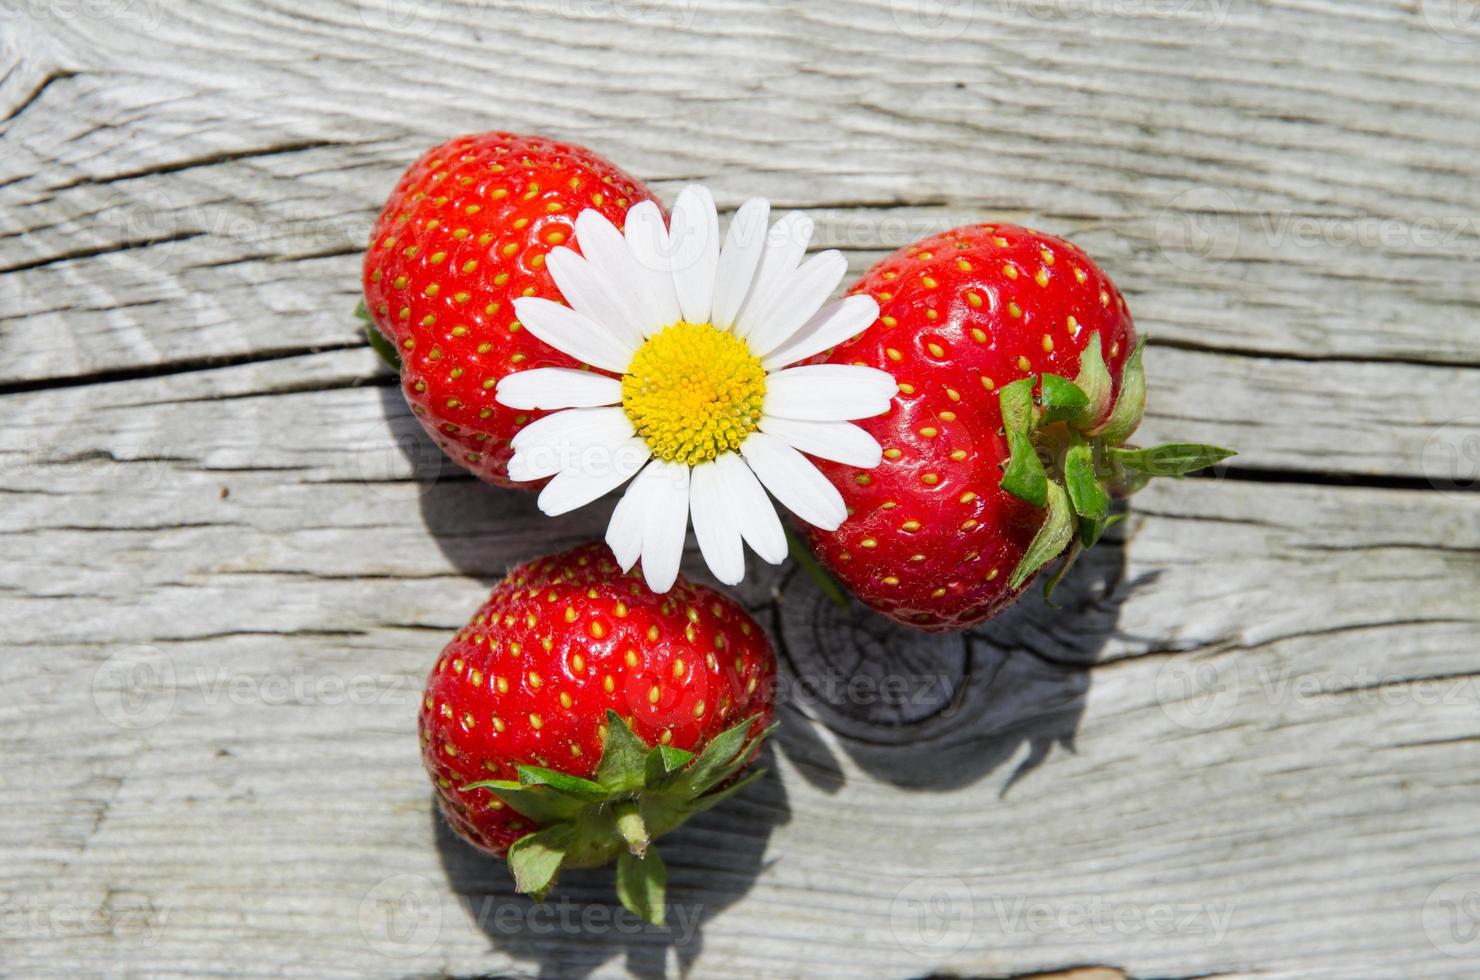 objets d'été - marguerite et fraises photo